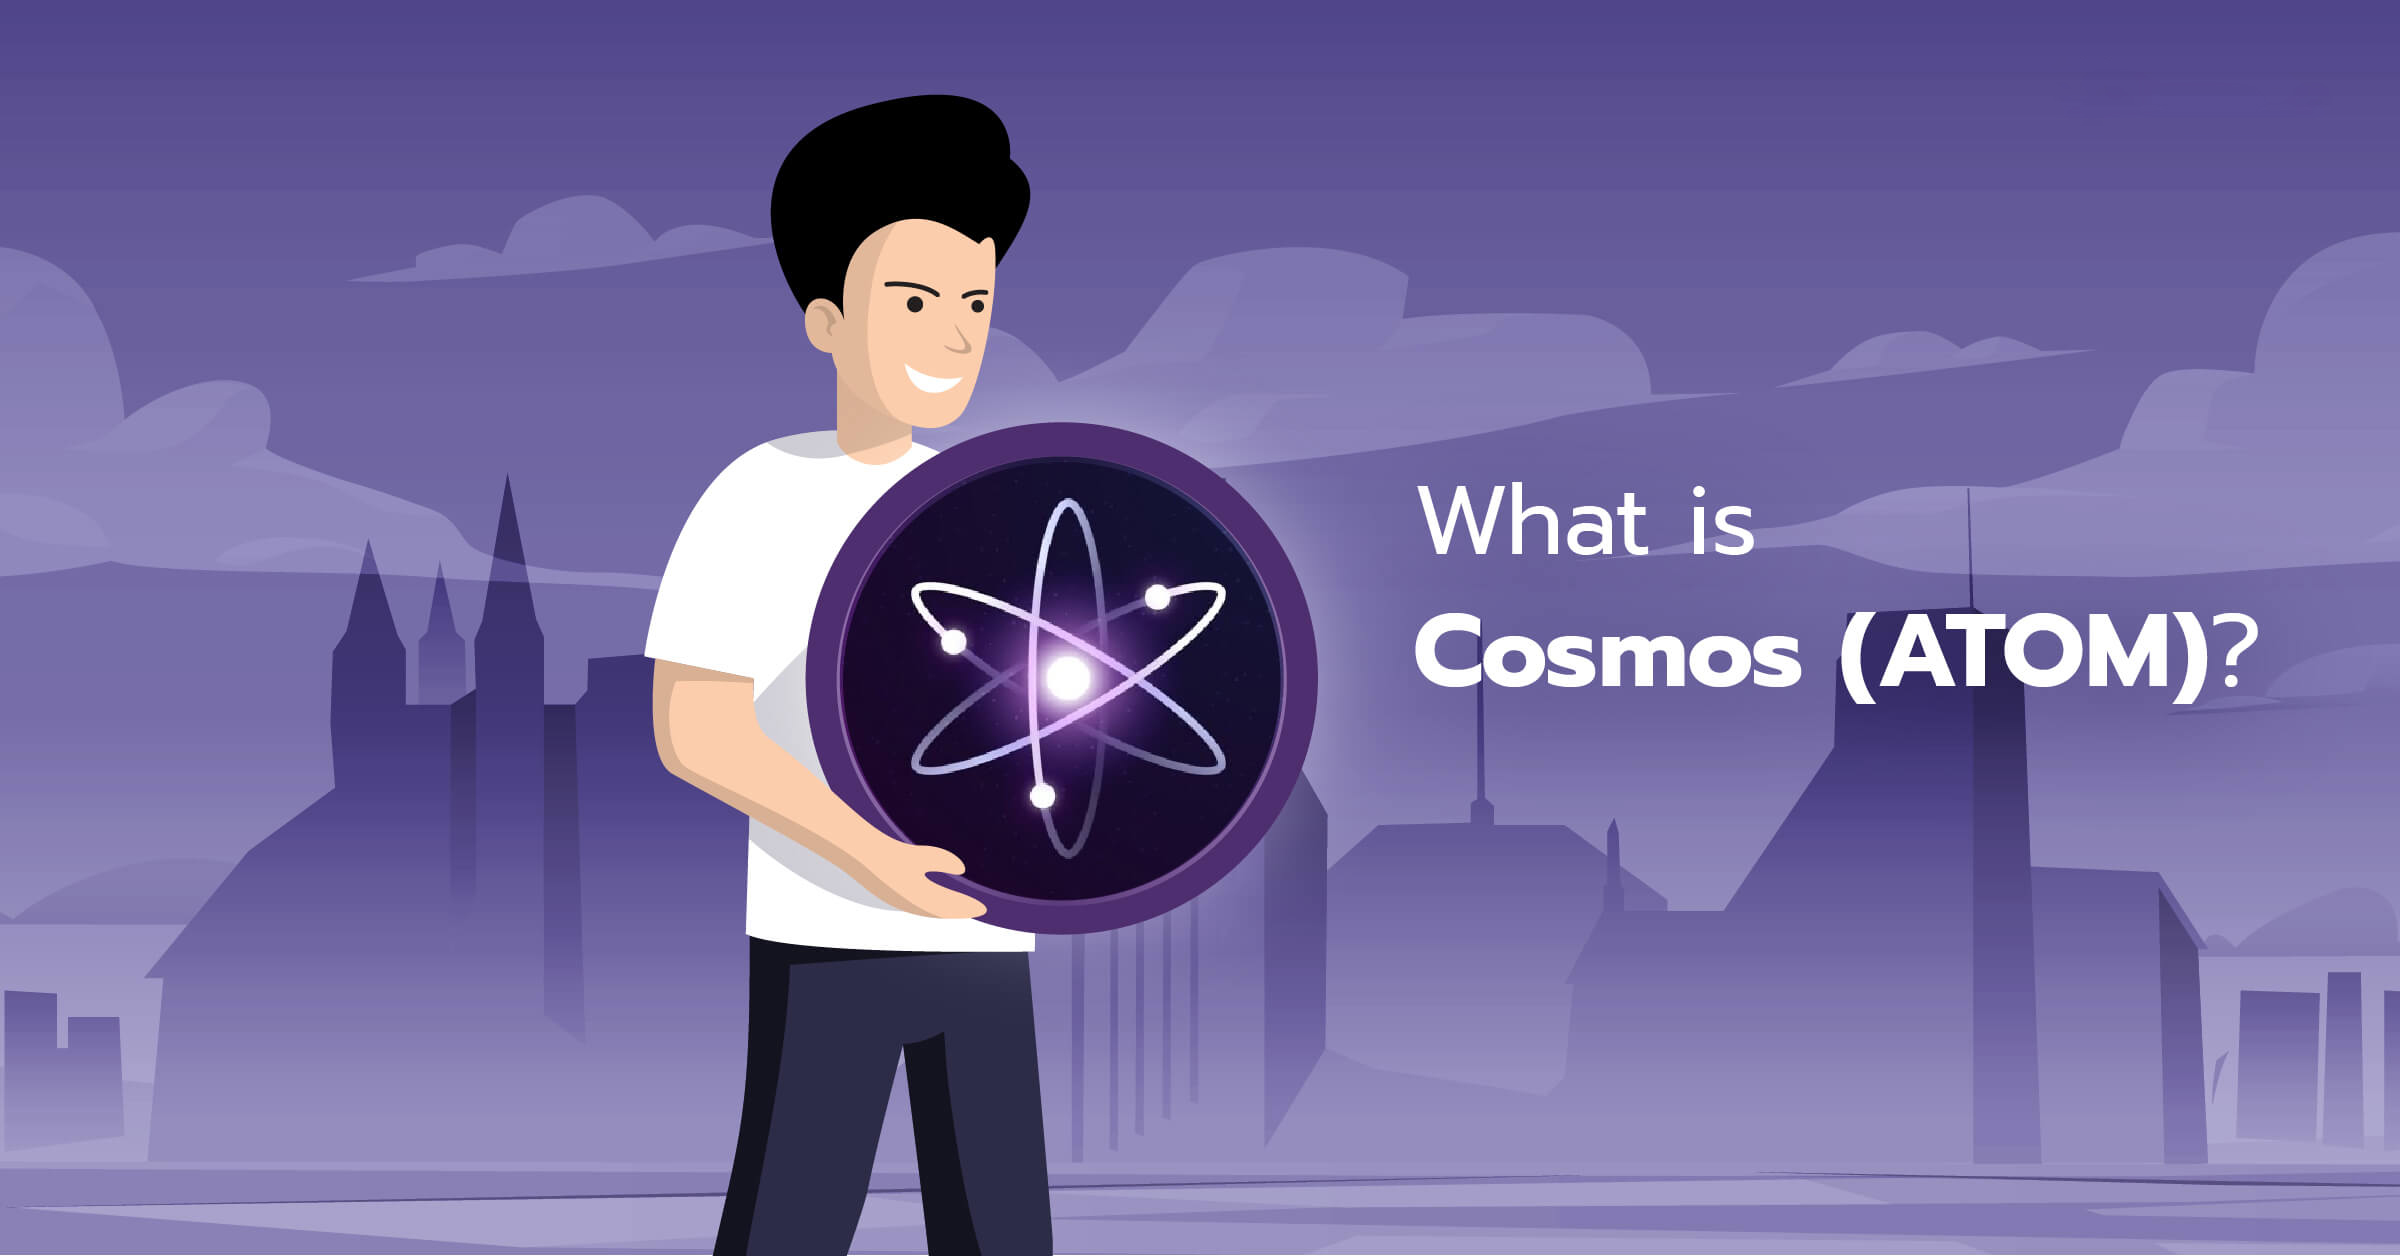 ارز دیجیتال کازماس (Cosmos) - اتم (ATOM) چیست؟